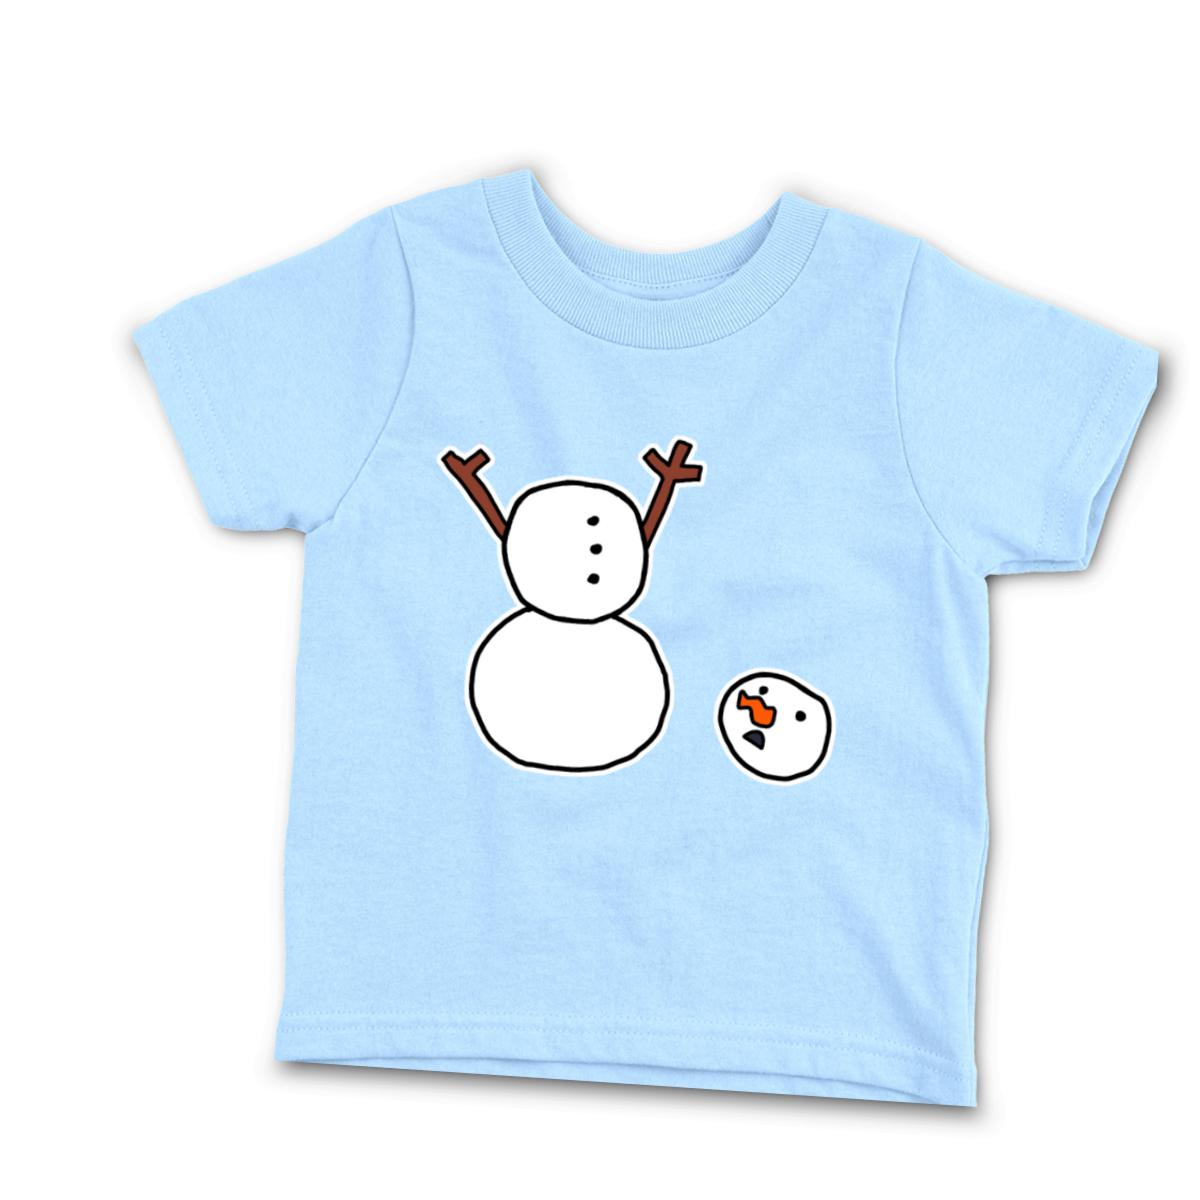 Headless Snowman Infant Tee 18M light-blue